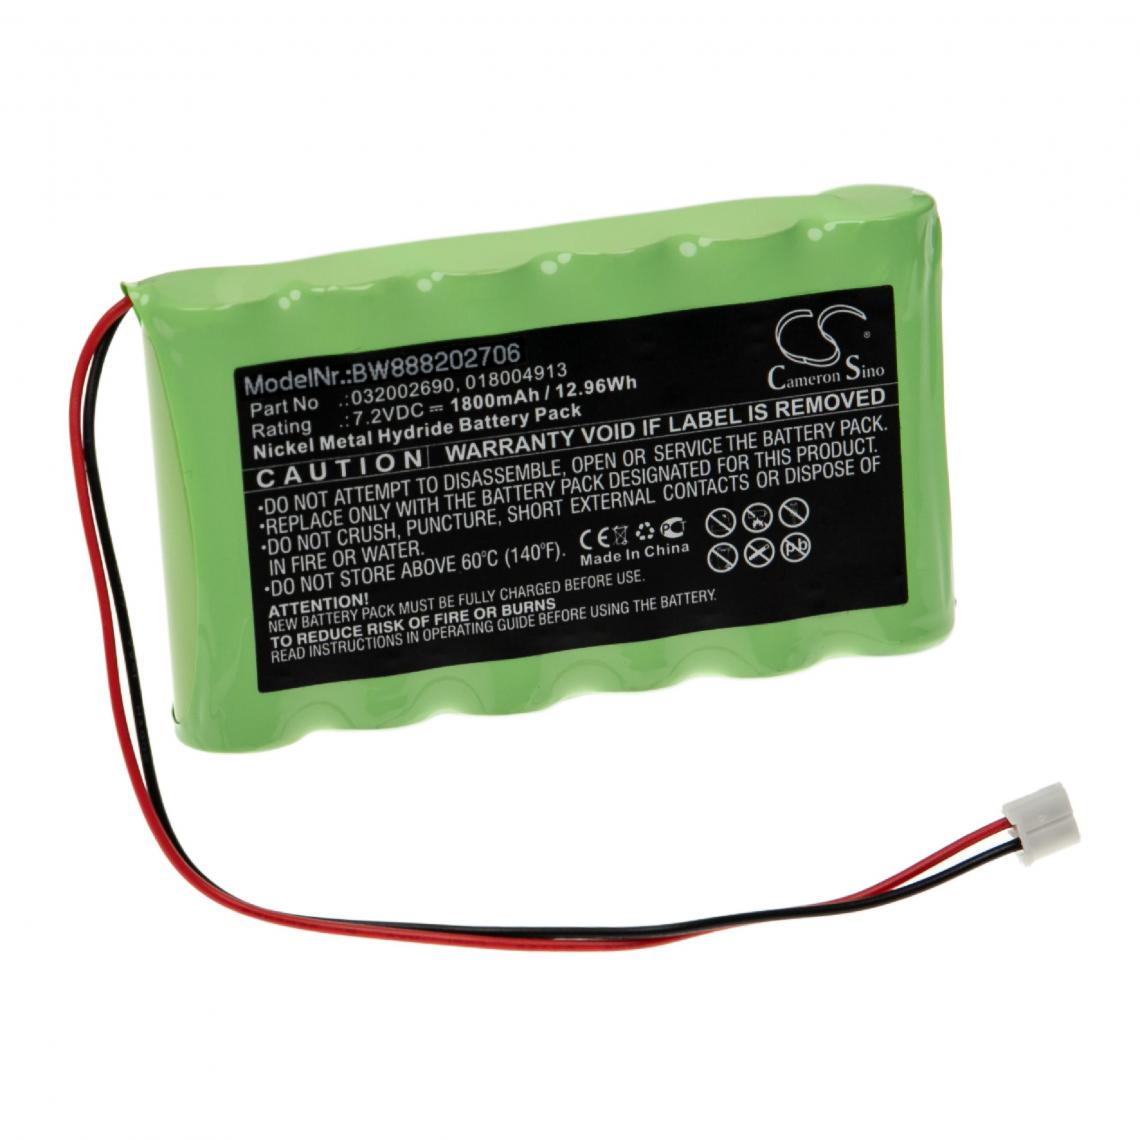 Vhbw - vhbw Batterie remplacement pour Compex 018.004.913, 018004913, 032002690 pour appareil médical (1800mAh, 7,2V, NiMH) - Piles spécifiques